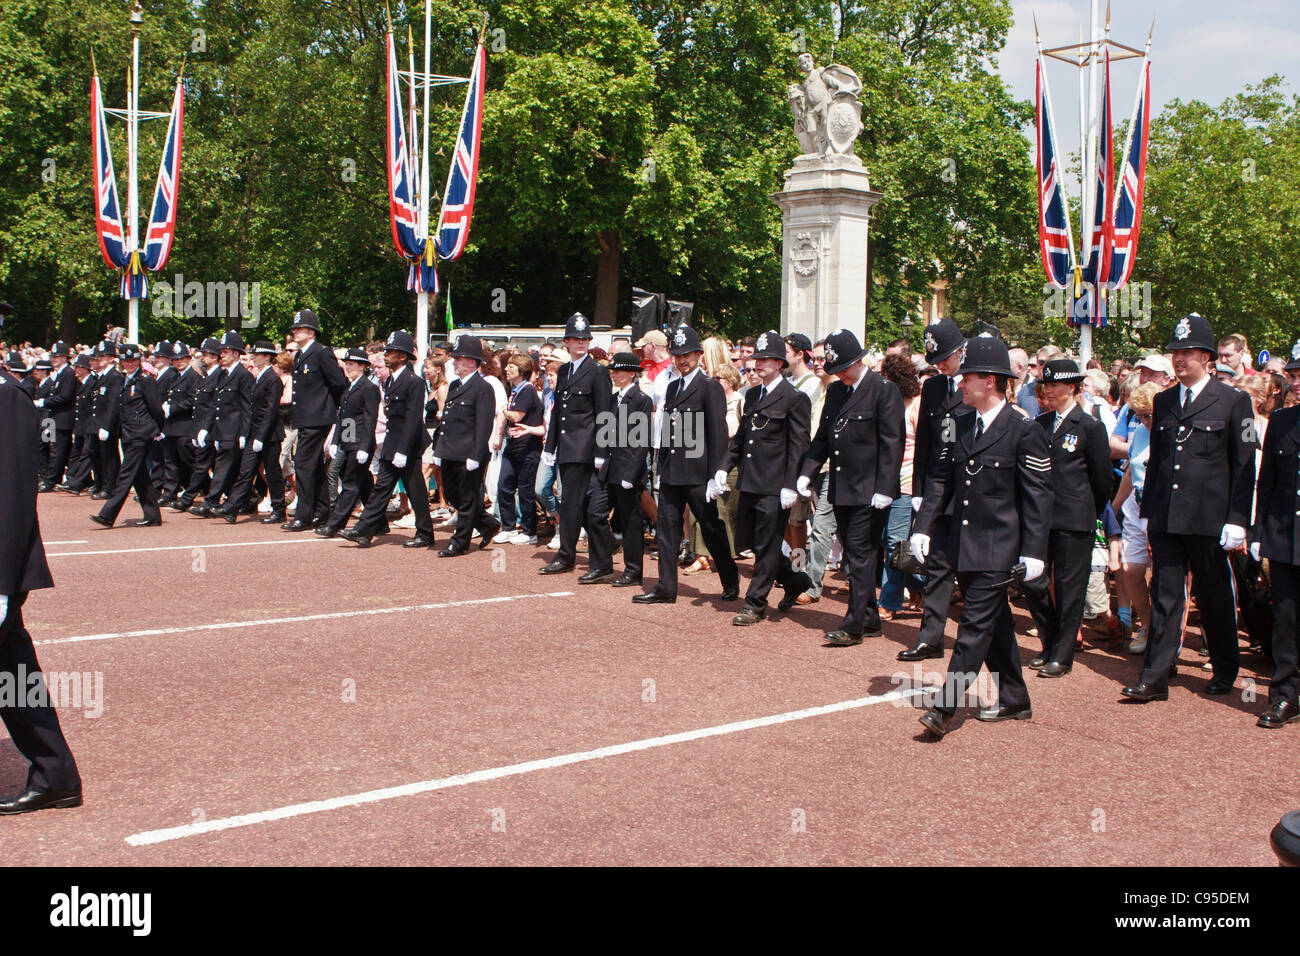 La police britannique menant la foule lors du défilé anniversaire célébration de Pall Mall à Buckingham Palace, Londres. Banque D'Images